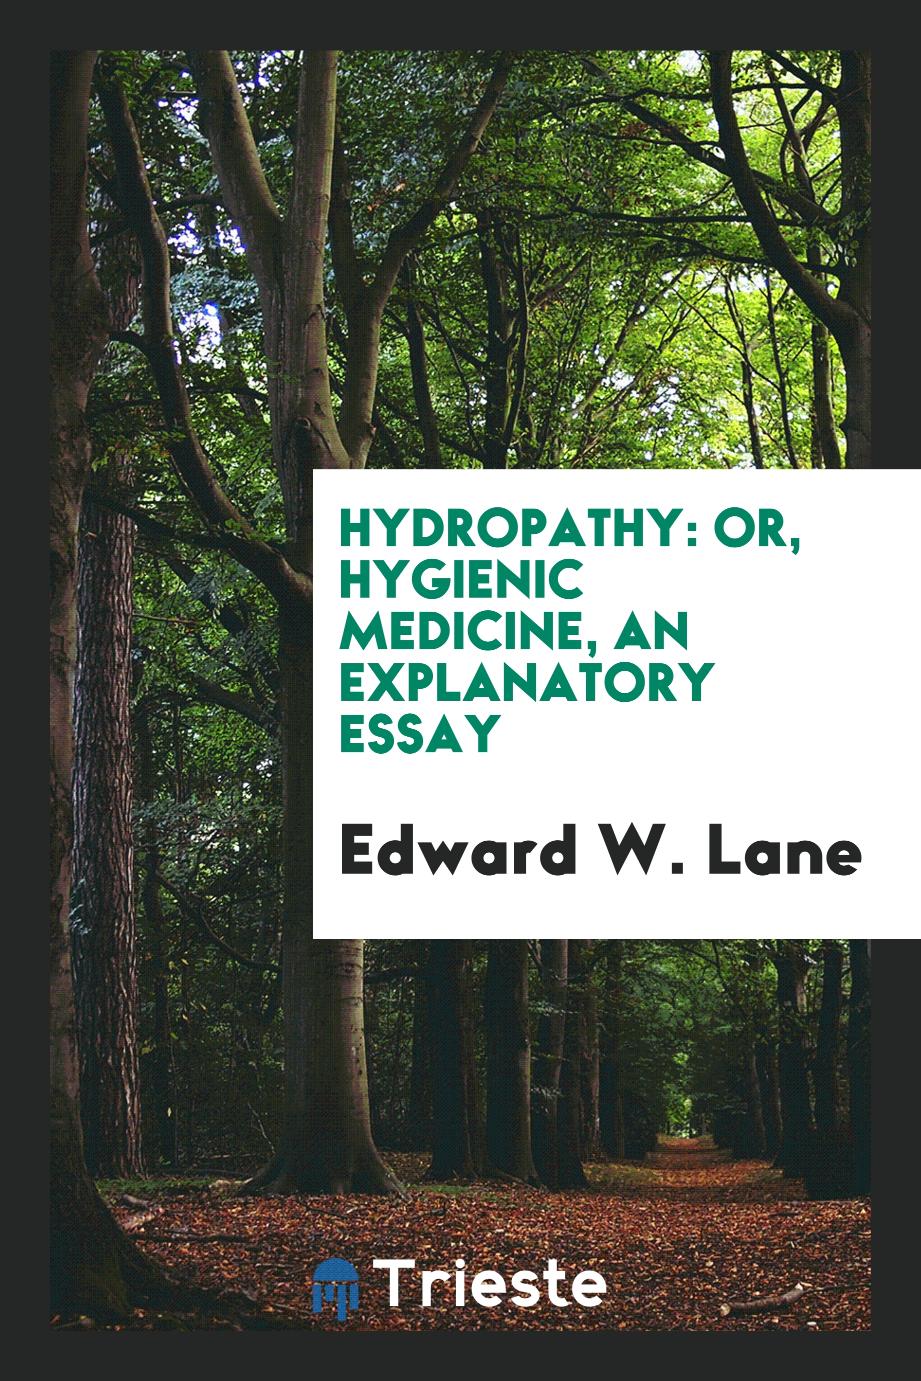 Hydropathy: Or, Hygienic Medicine, an Explanatory Essay